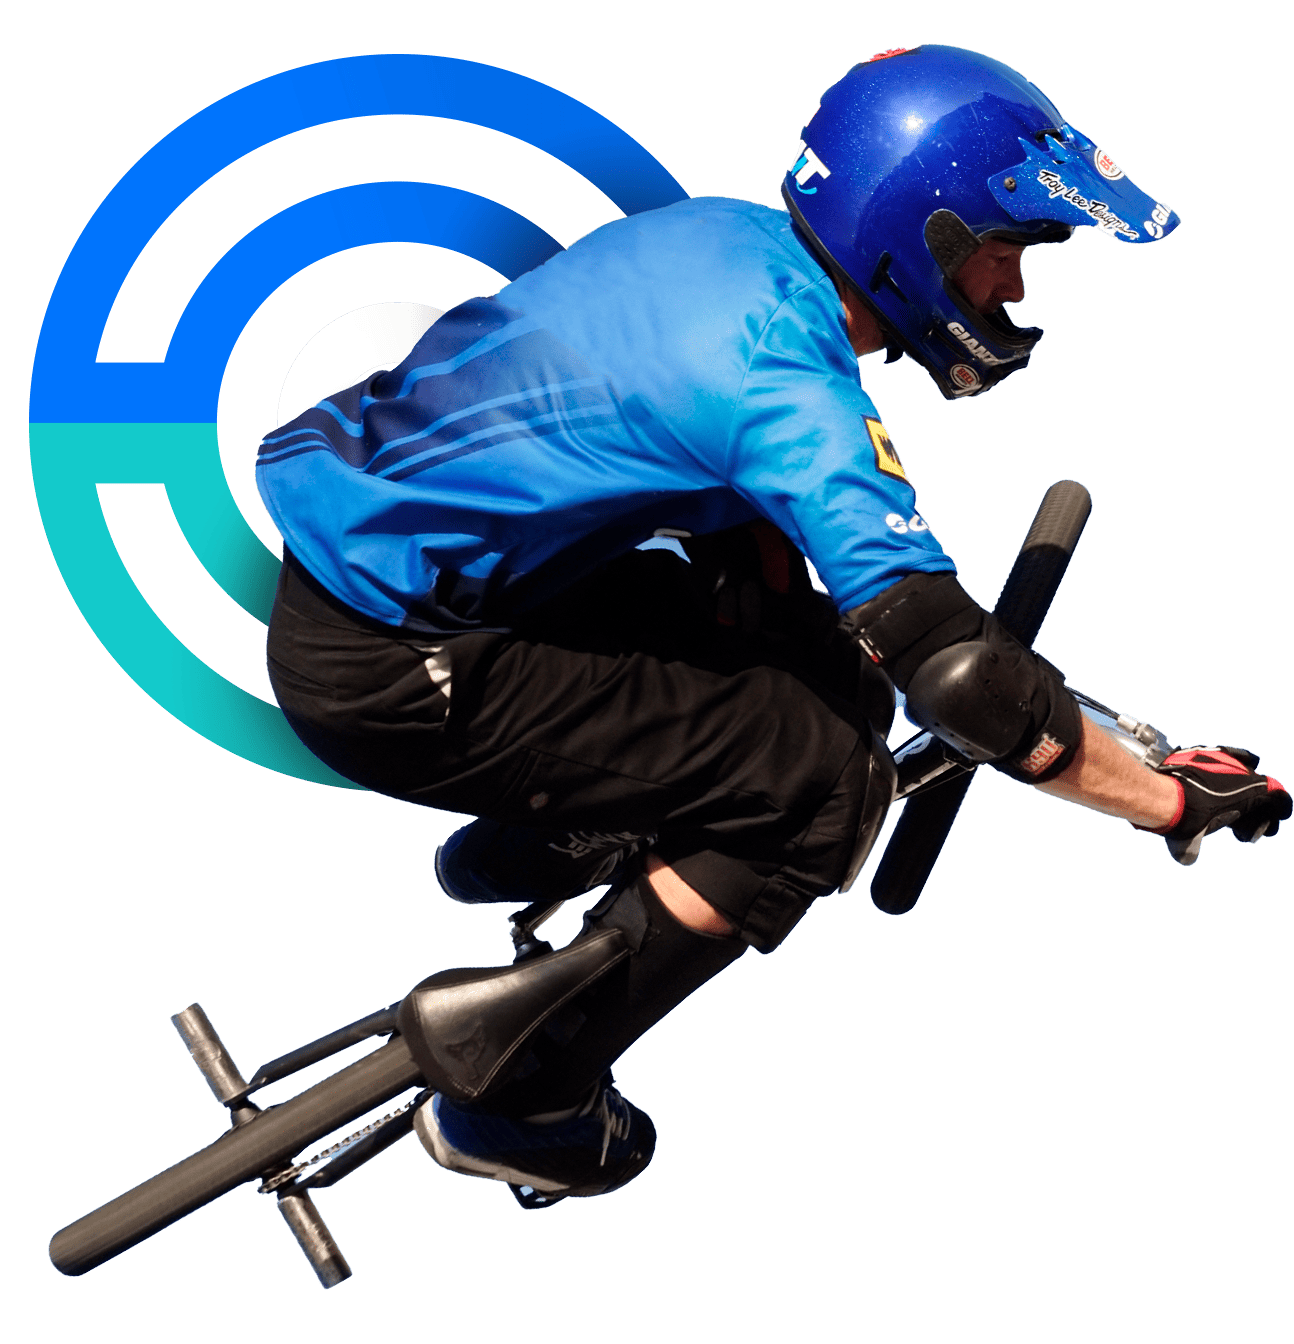 En la imagen, un ciclista realiza trucos con la BMX. Su casco y vestimenta son azules. Lleva las protecciones características de la disciplina. 